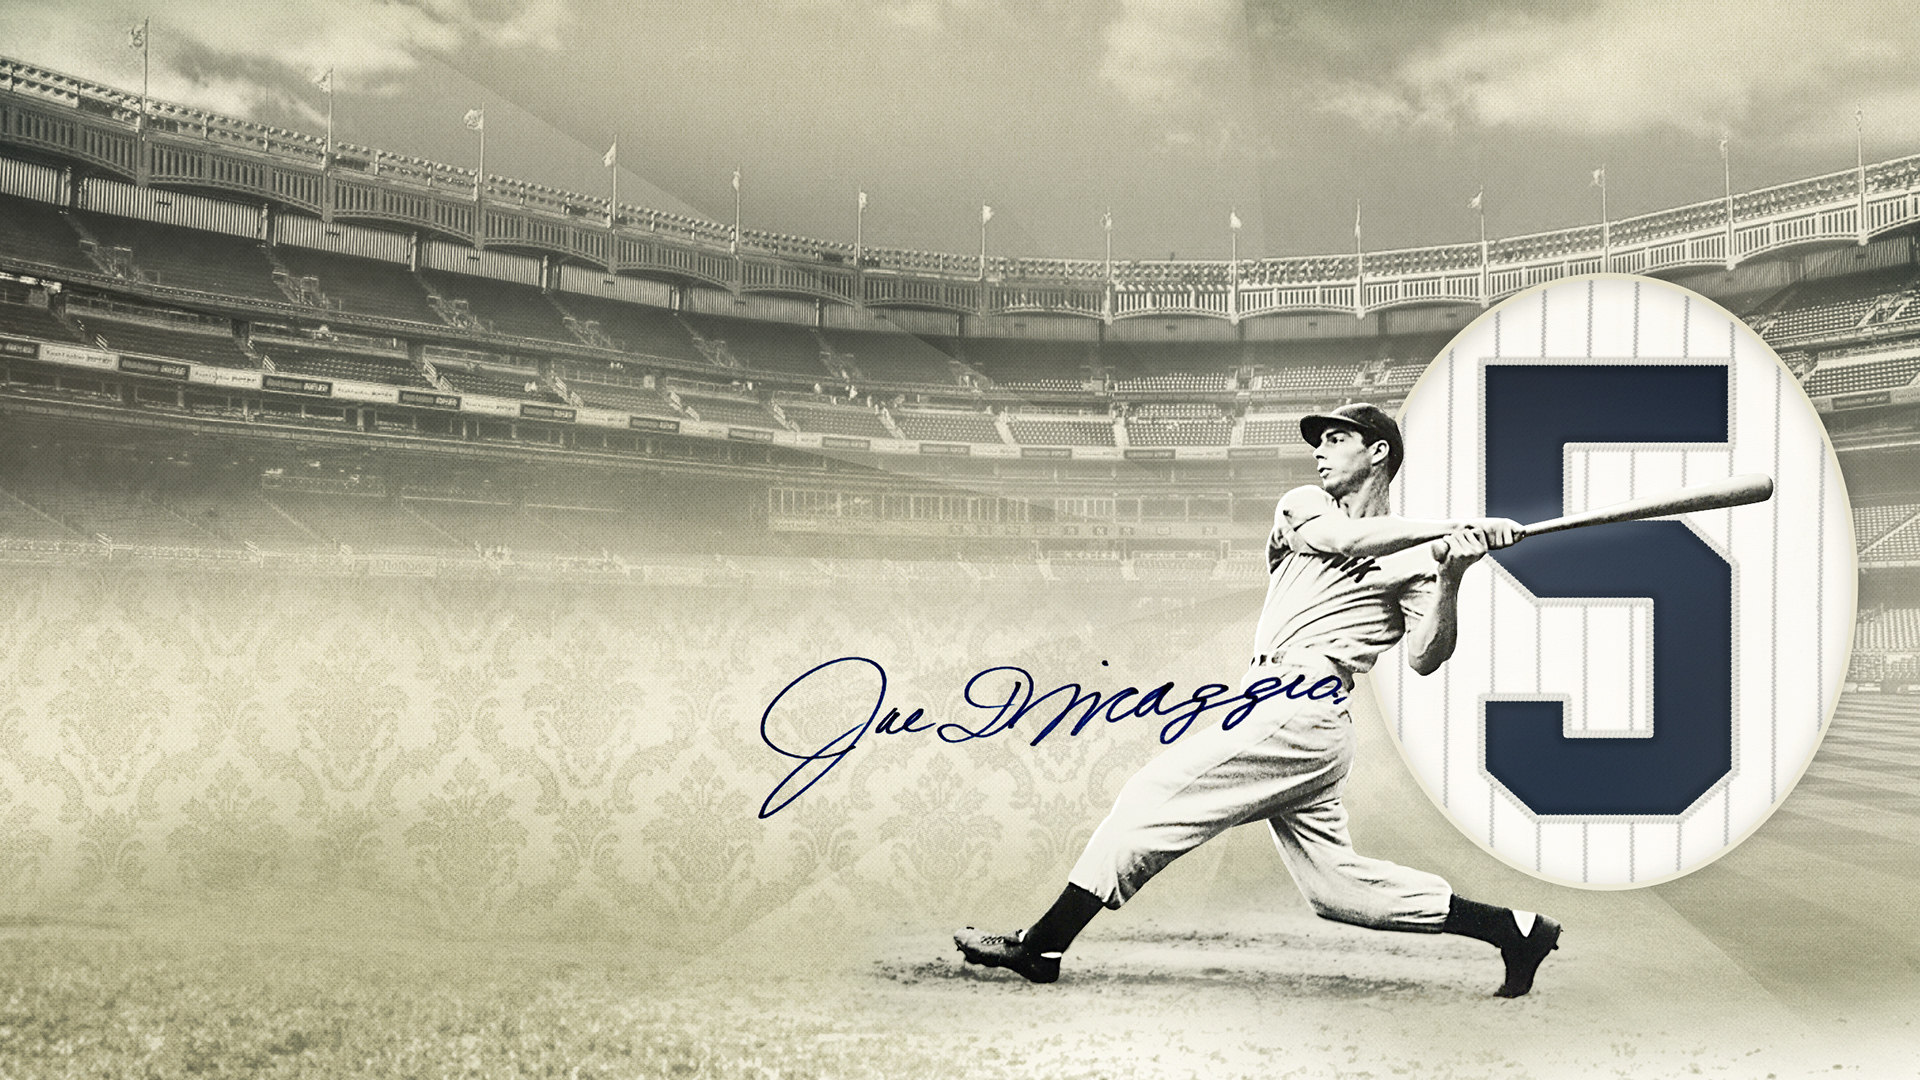 Joe DiMaggio Yankees Wallpaper 2560x1440.